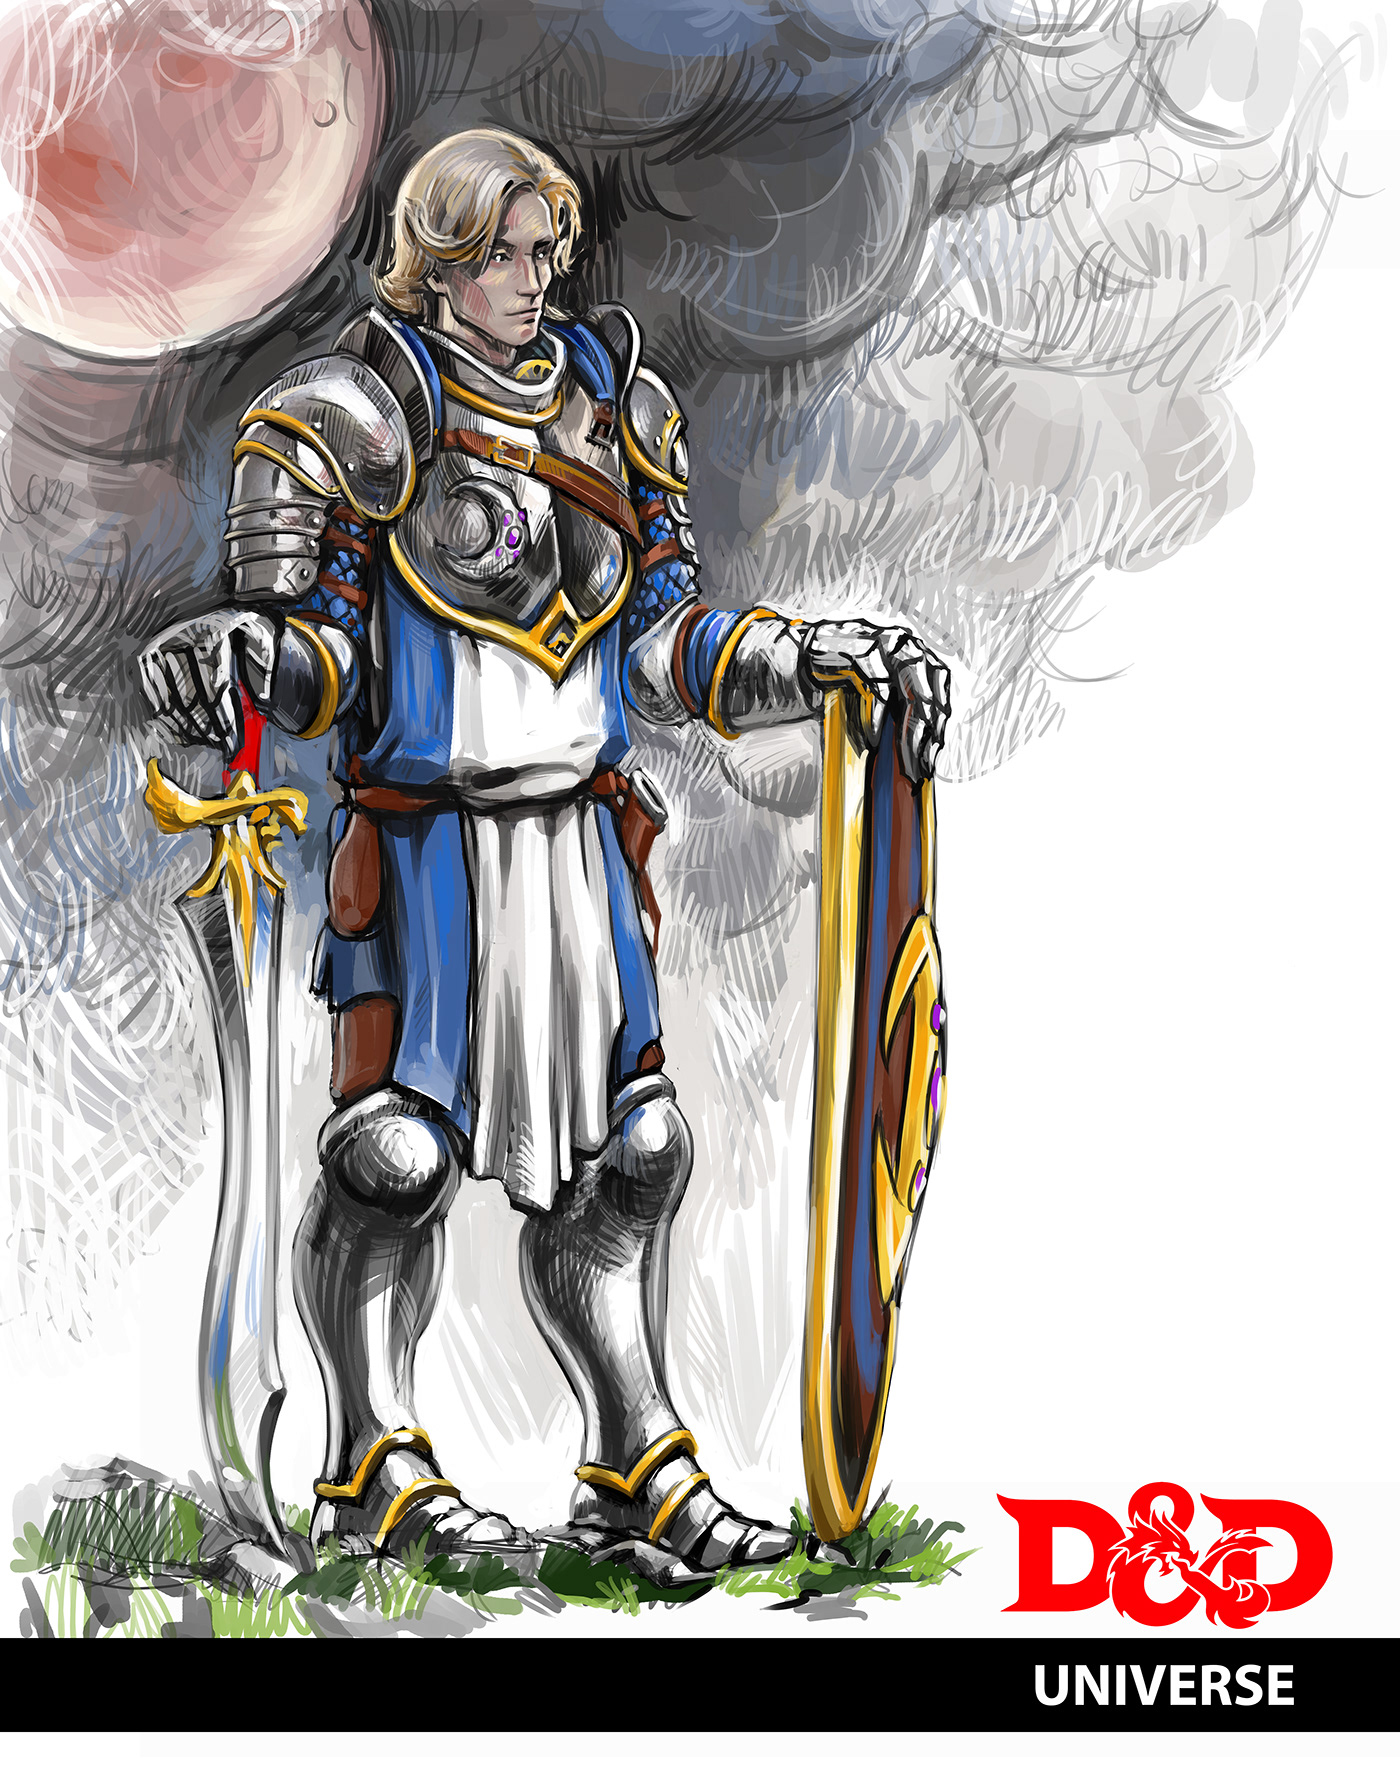 ILLUSTRATION  Digital Art  dnd rpg Character design  artwork Fantsy Dungeons and Dragons orc warcraft